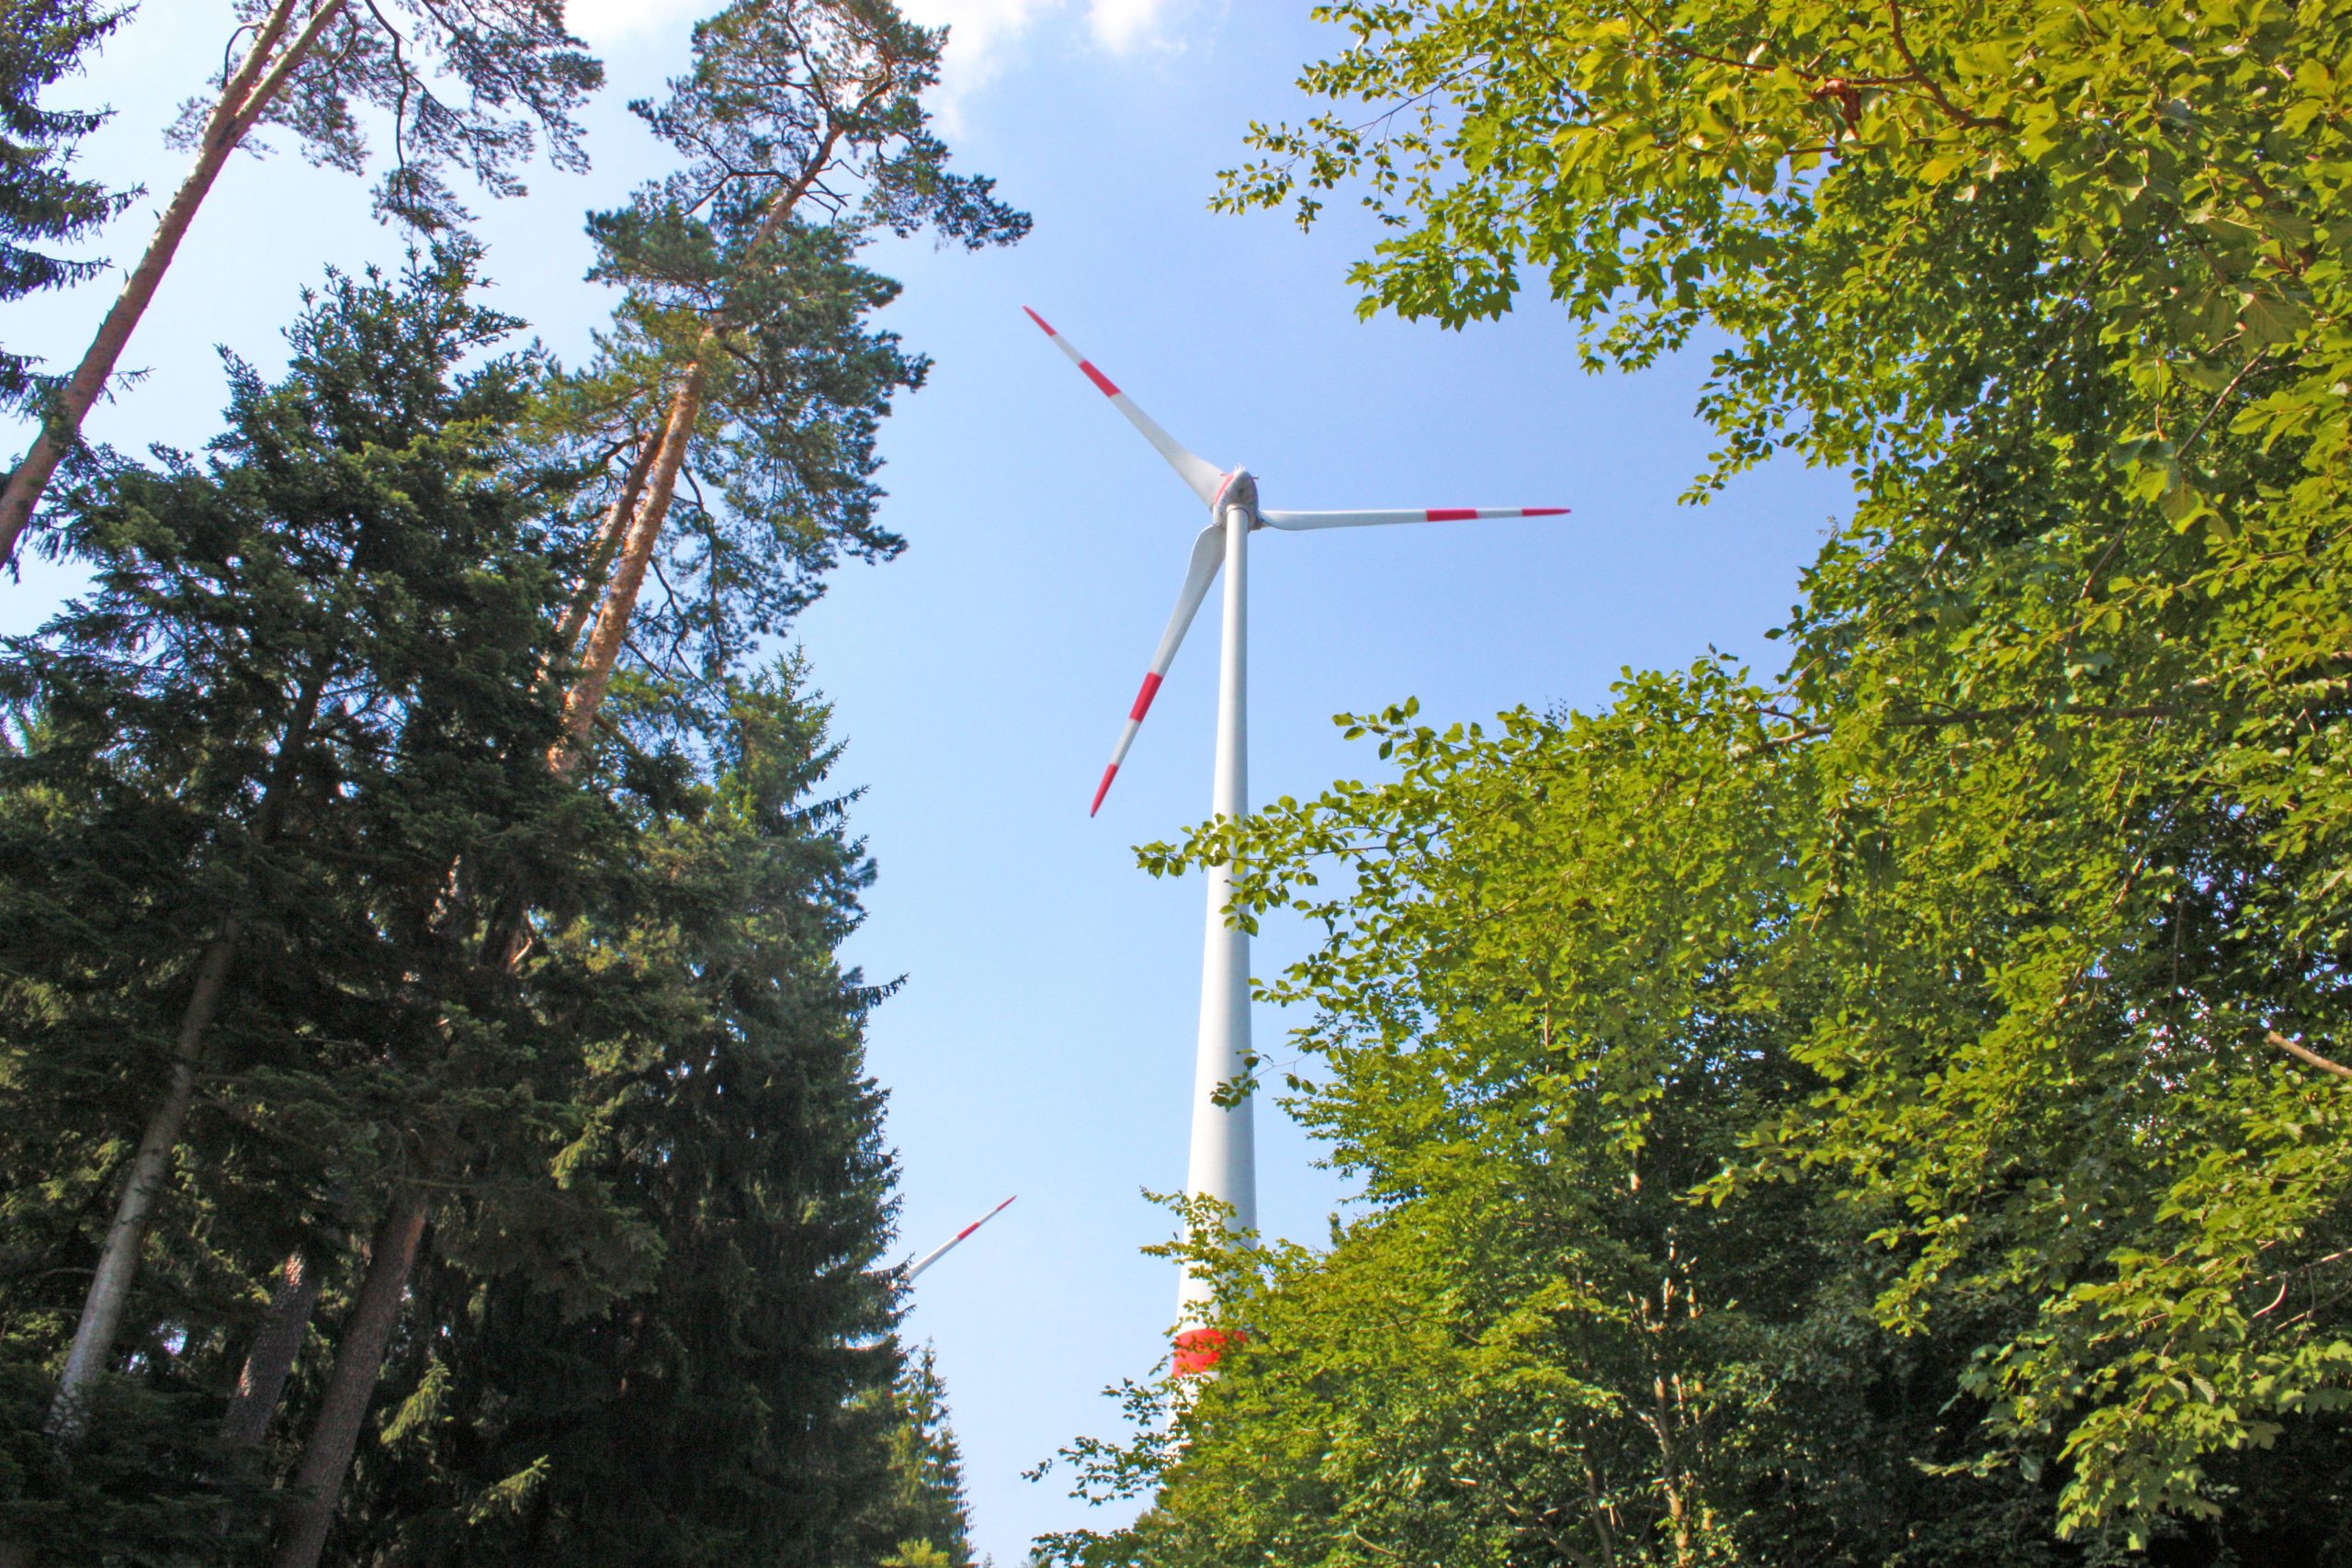 Pauschales Verbot von Windkraft im Wald ist unrechtmäßig